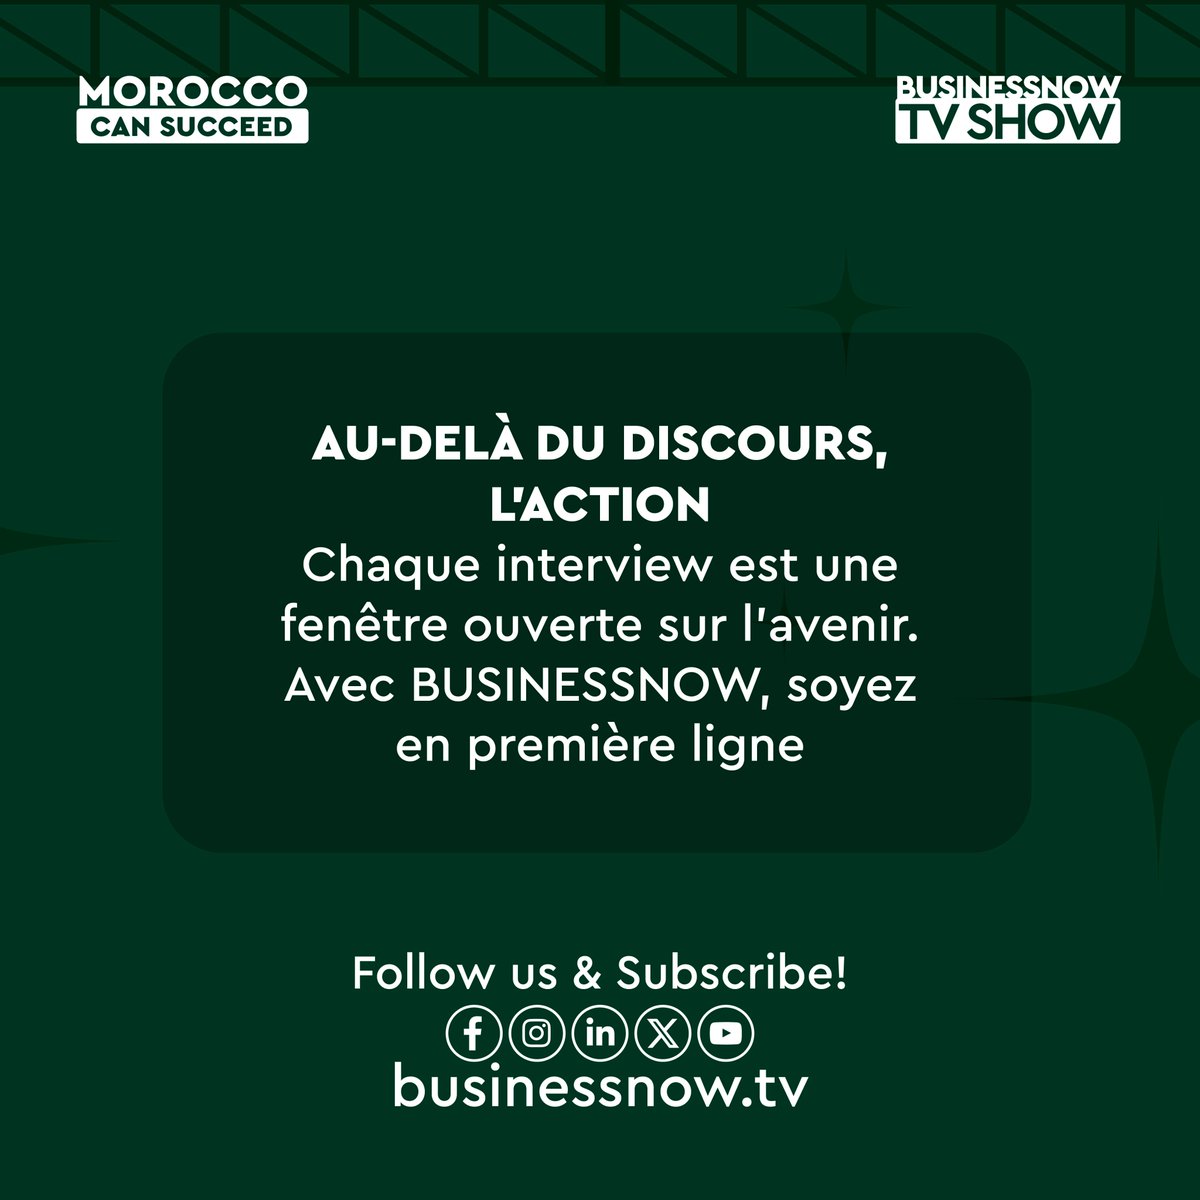 ✨ Découvrez les Thématiques en Lumière chez BUSINESSNOW, exploration au cœur de nos programmes à travers des dialogues exclusifs.

Suivez-nous sur businessnow.tv

#MoroccoCanSucceed #BnTvShow